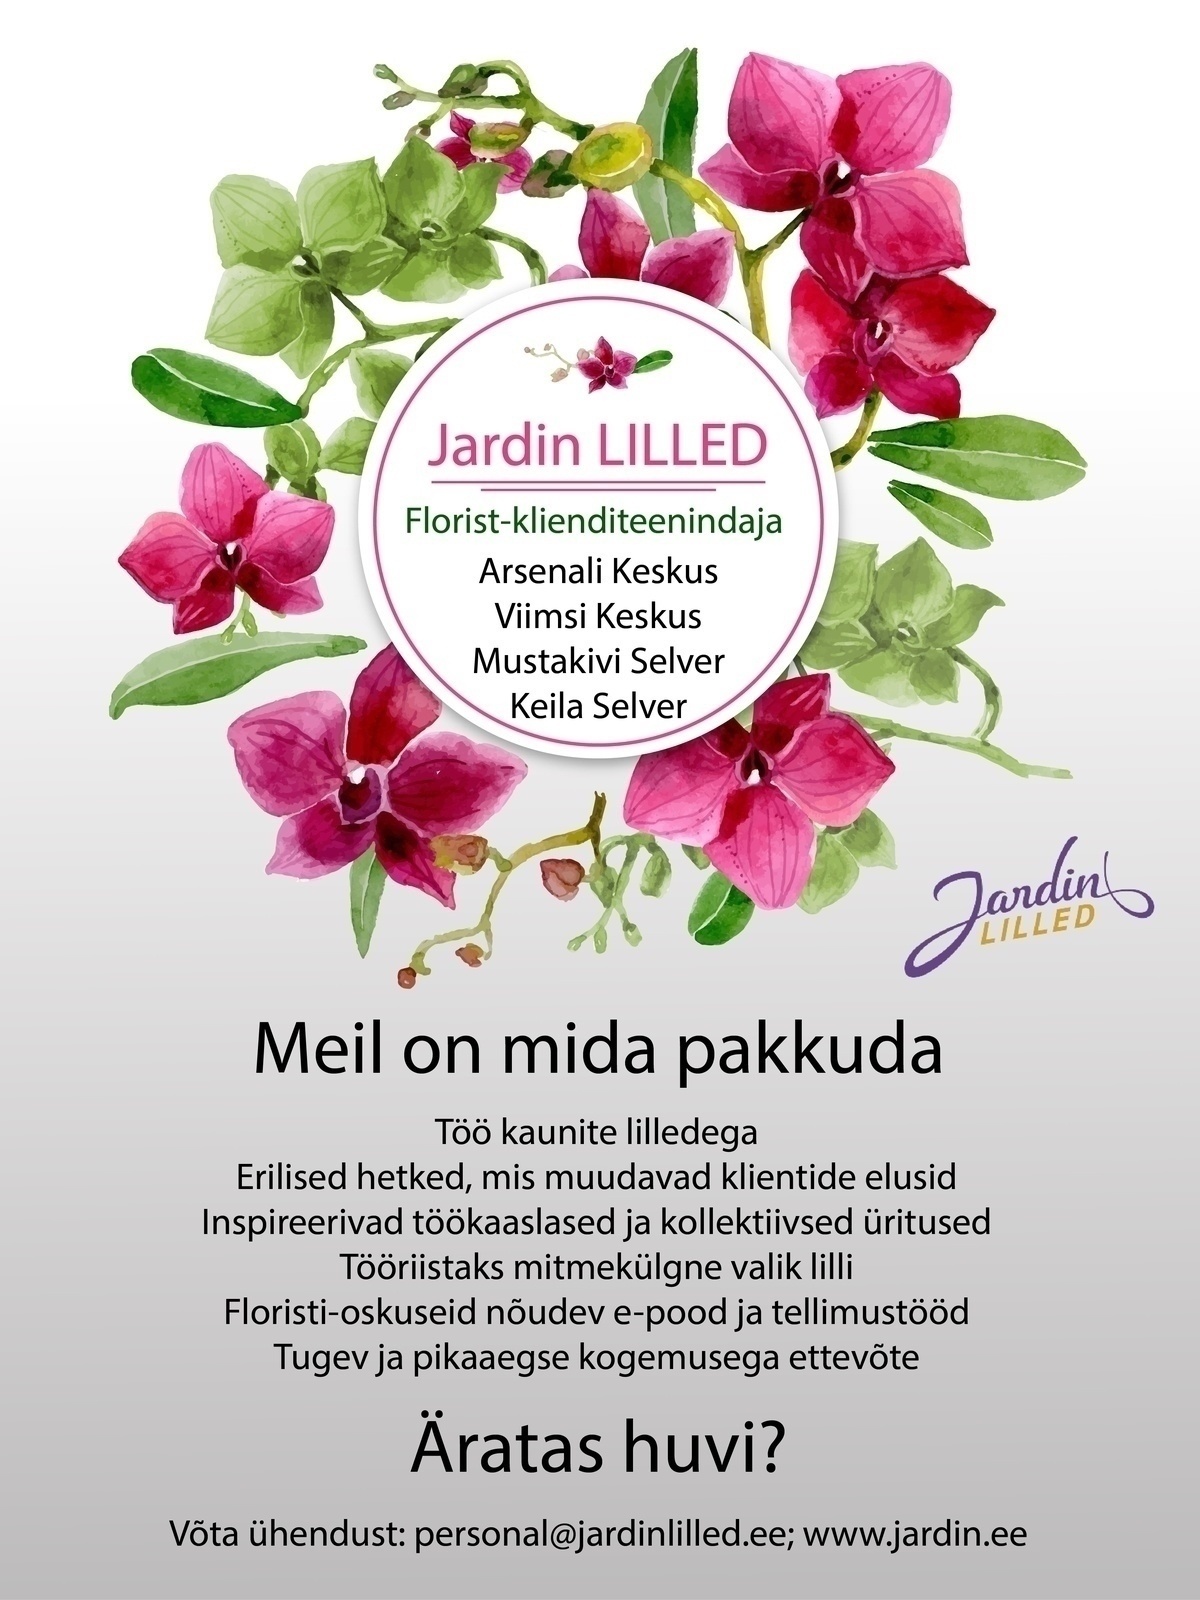 Jardin OÜ Florist-klienditeenindaja (Viimsi ja Mustakivi Selver)